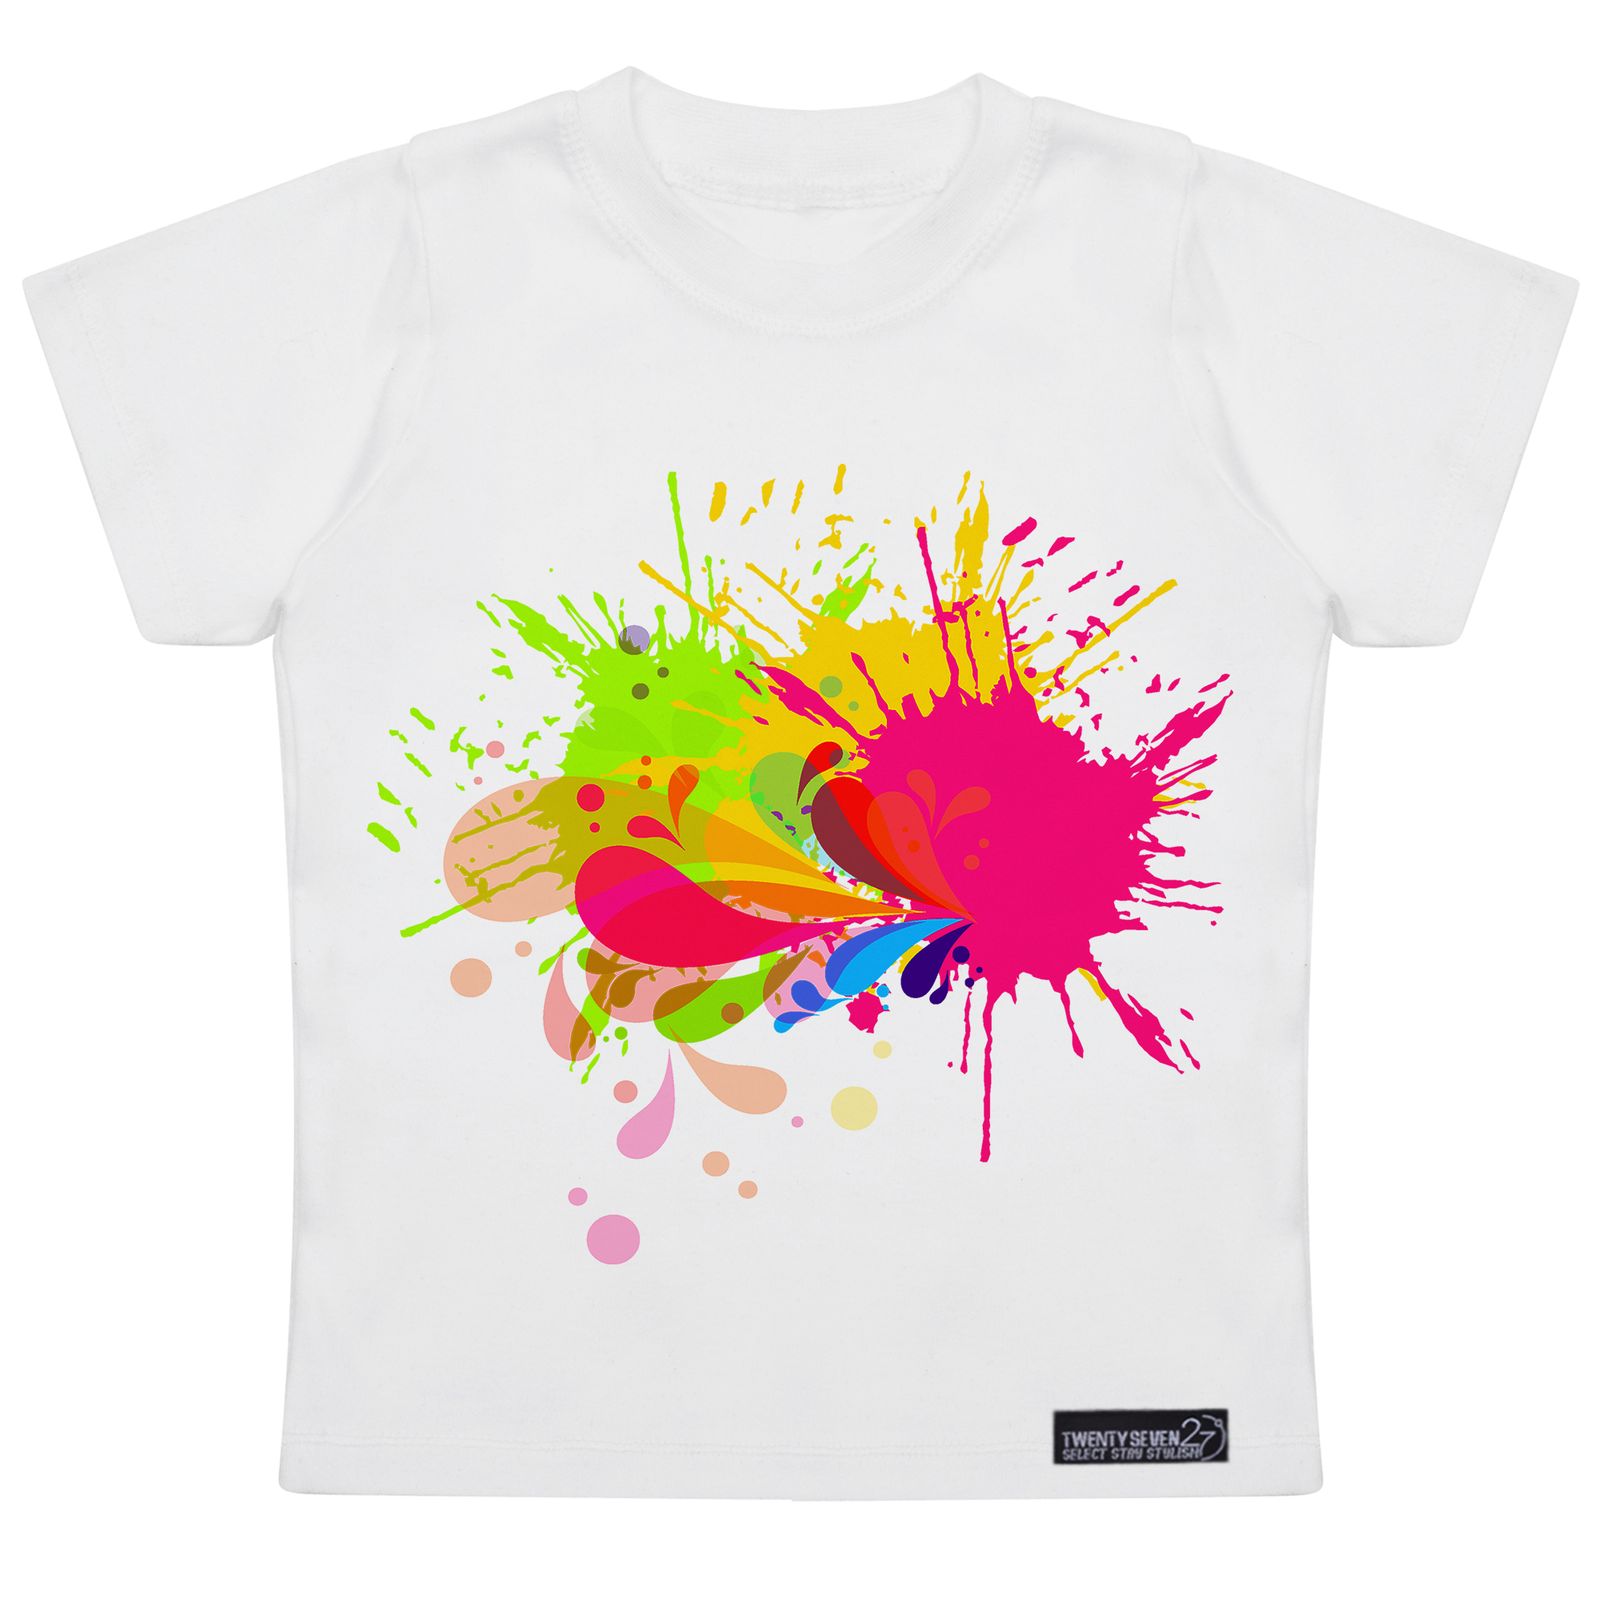 تی شرت آستین کوتاه پسرانه 27 مدل Brush Watercolor کد MH953 -  - 1